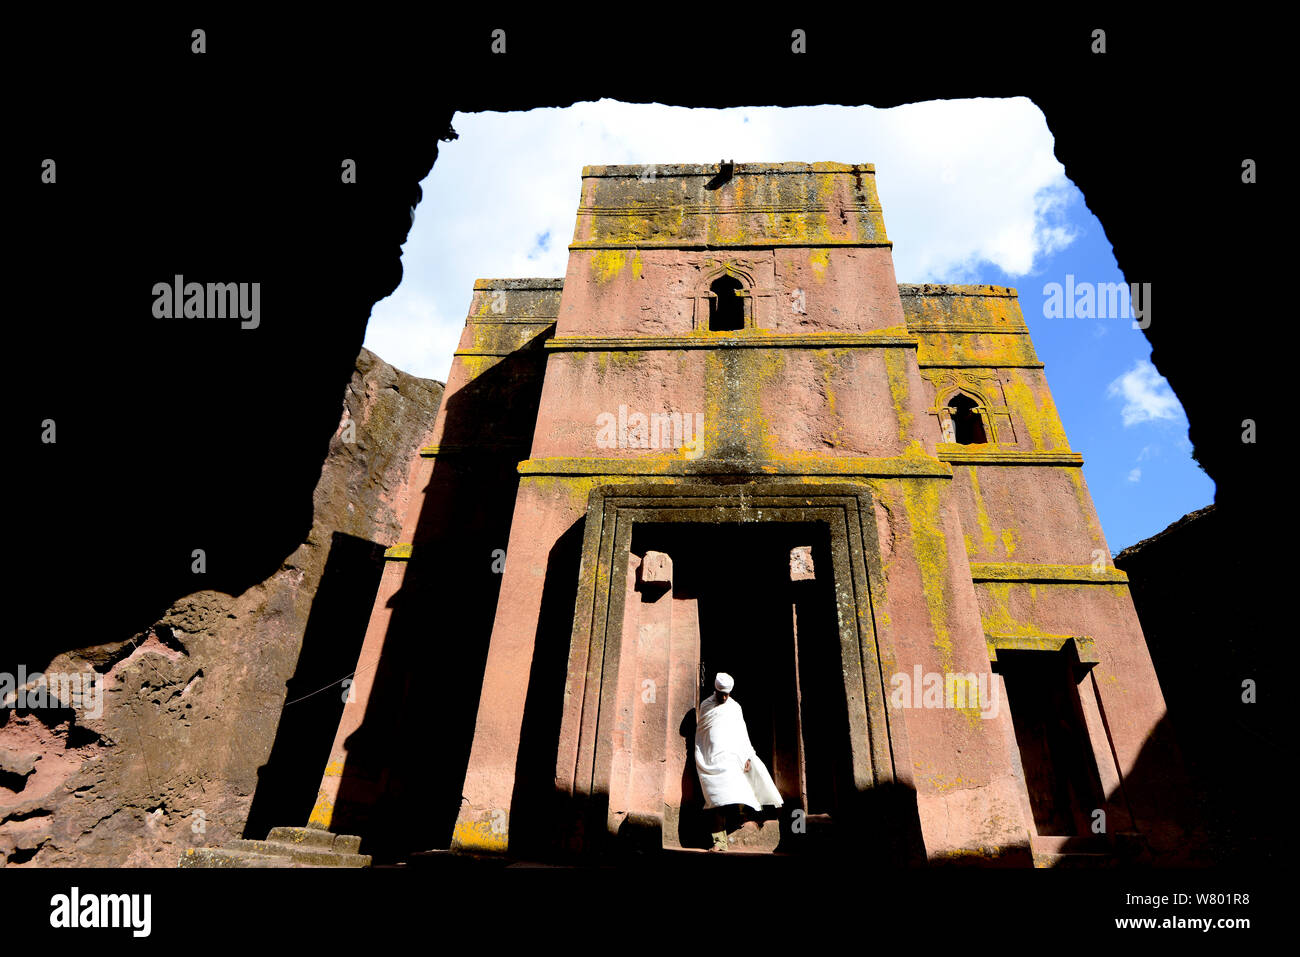 Sacerdote di abbigliamento tradizionale fuori Bet Giyorgis chiesa, una chiesa scavate nella solida roccia di tufo, Lalibela. UNESCO - Sito Patrimonio dell'umanità. Etiopia, dicembre 2014. Foto Stock